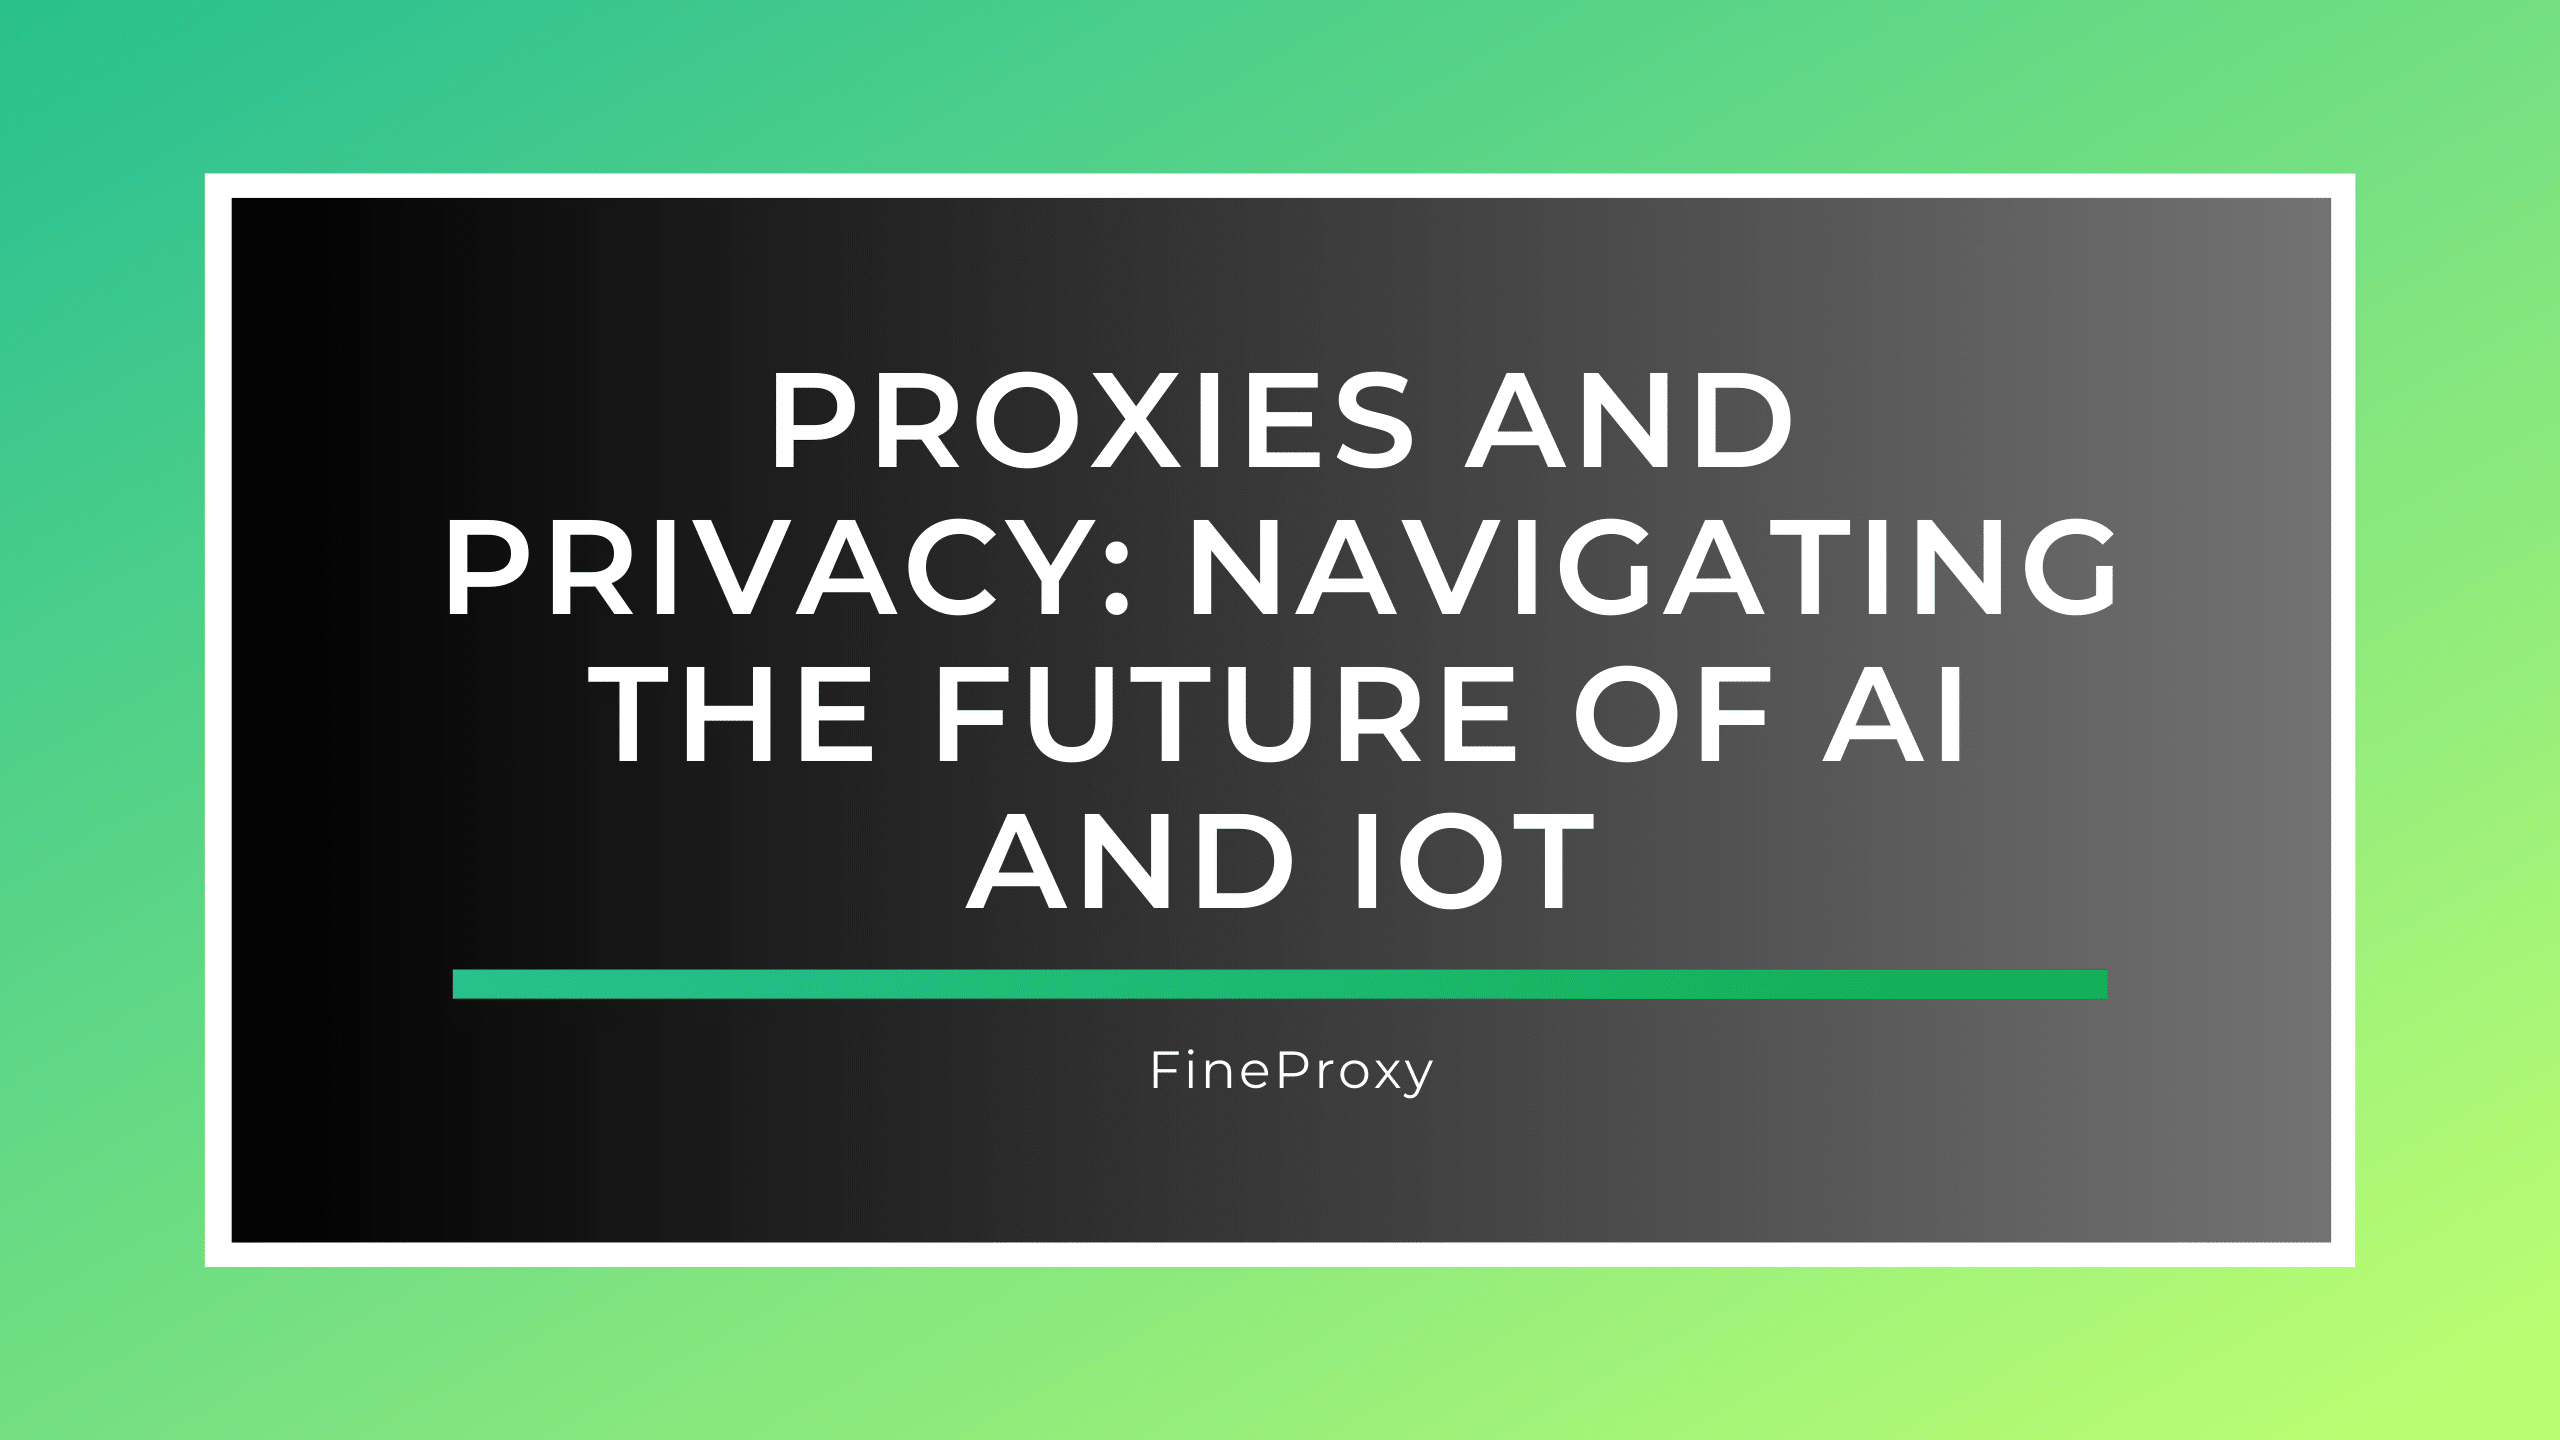 प्रॉक्सी और गोपनीयता: AI और IoT के भविष्य को नेविगेट करना